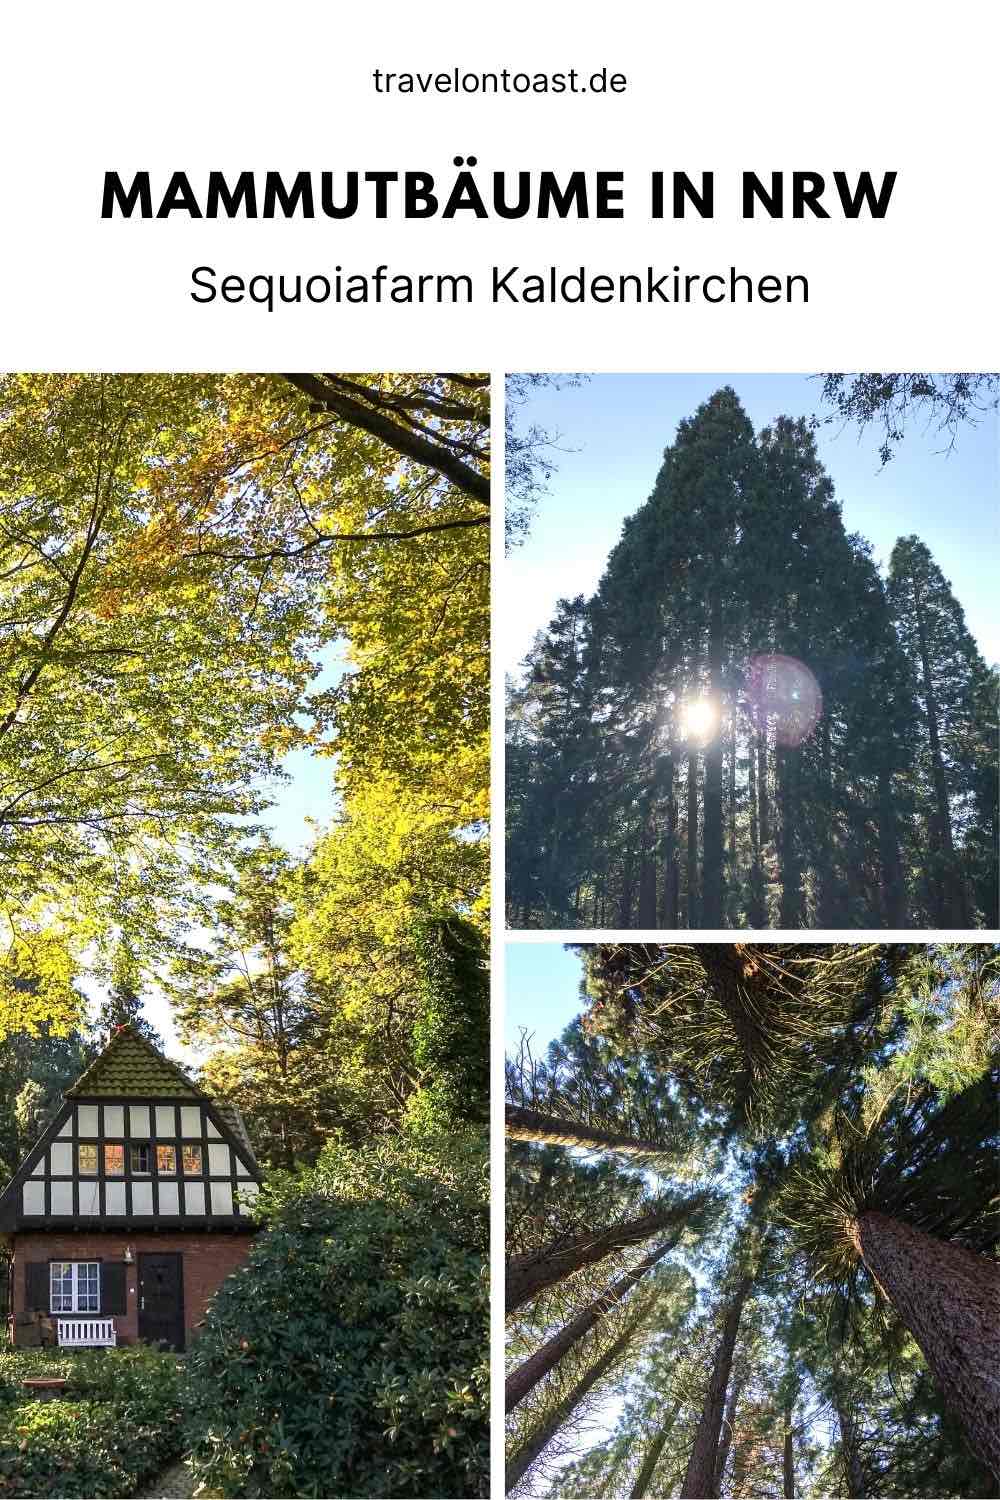 Du möchtest Mammutbäume in NRW erleben? Ein tolles, kostenloses Ausflugsziel ist die Sequoiafarm Kaldenkirchen.